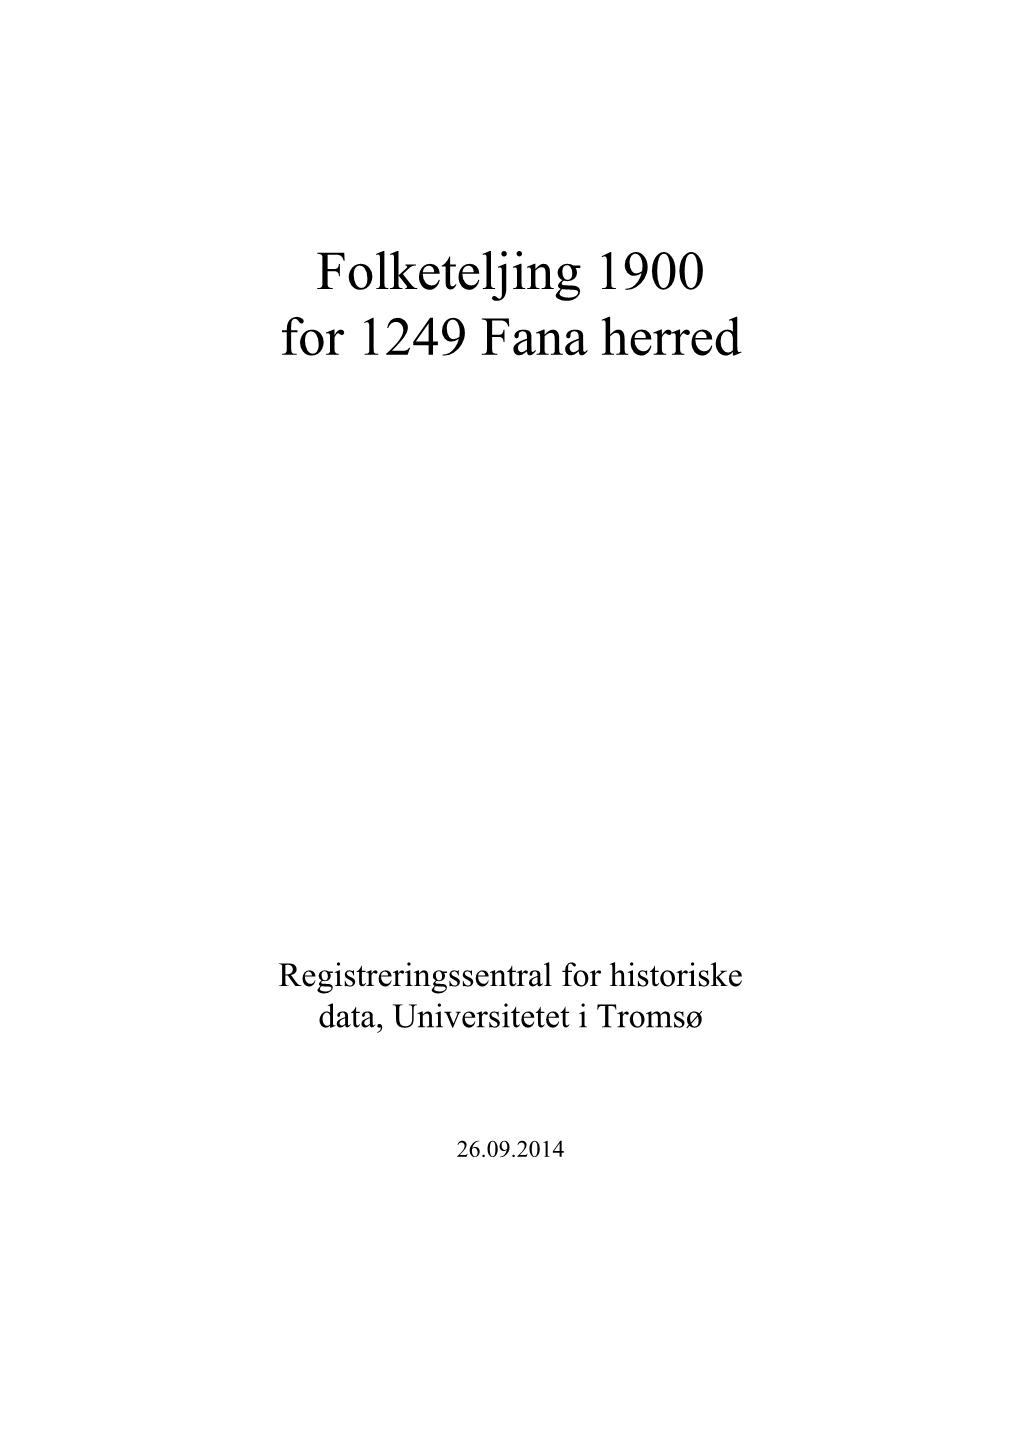 Folketeljing 1900 for 1249 Fana Herred